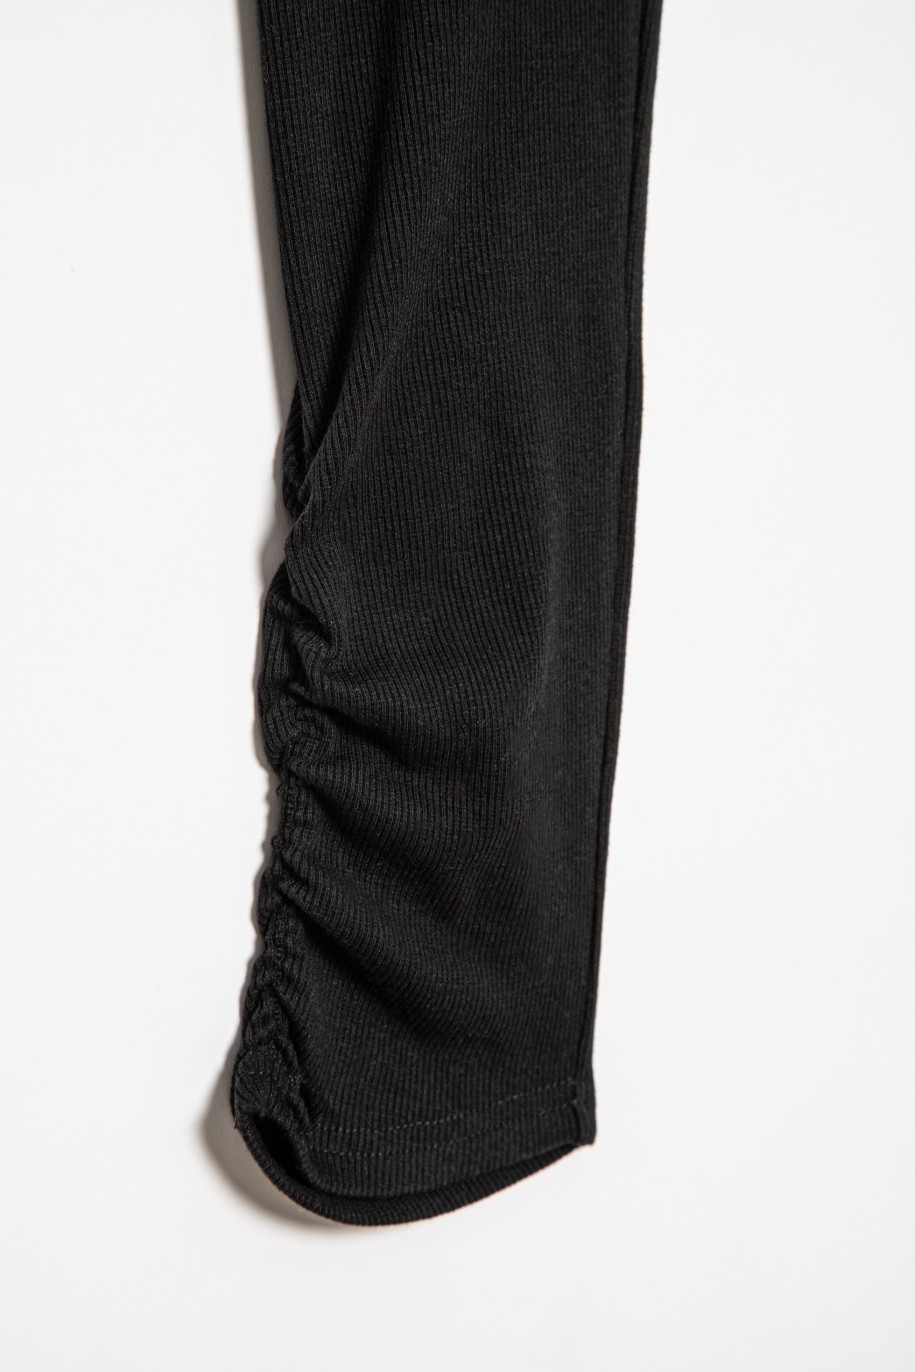 Czarne leginsy dla dziewczyny z marszczonymi nogawkami - 31829